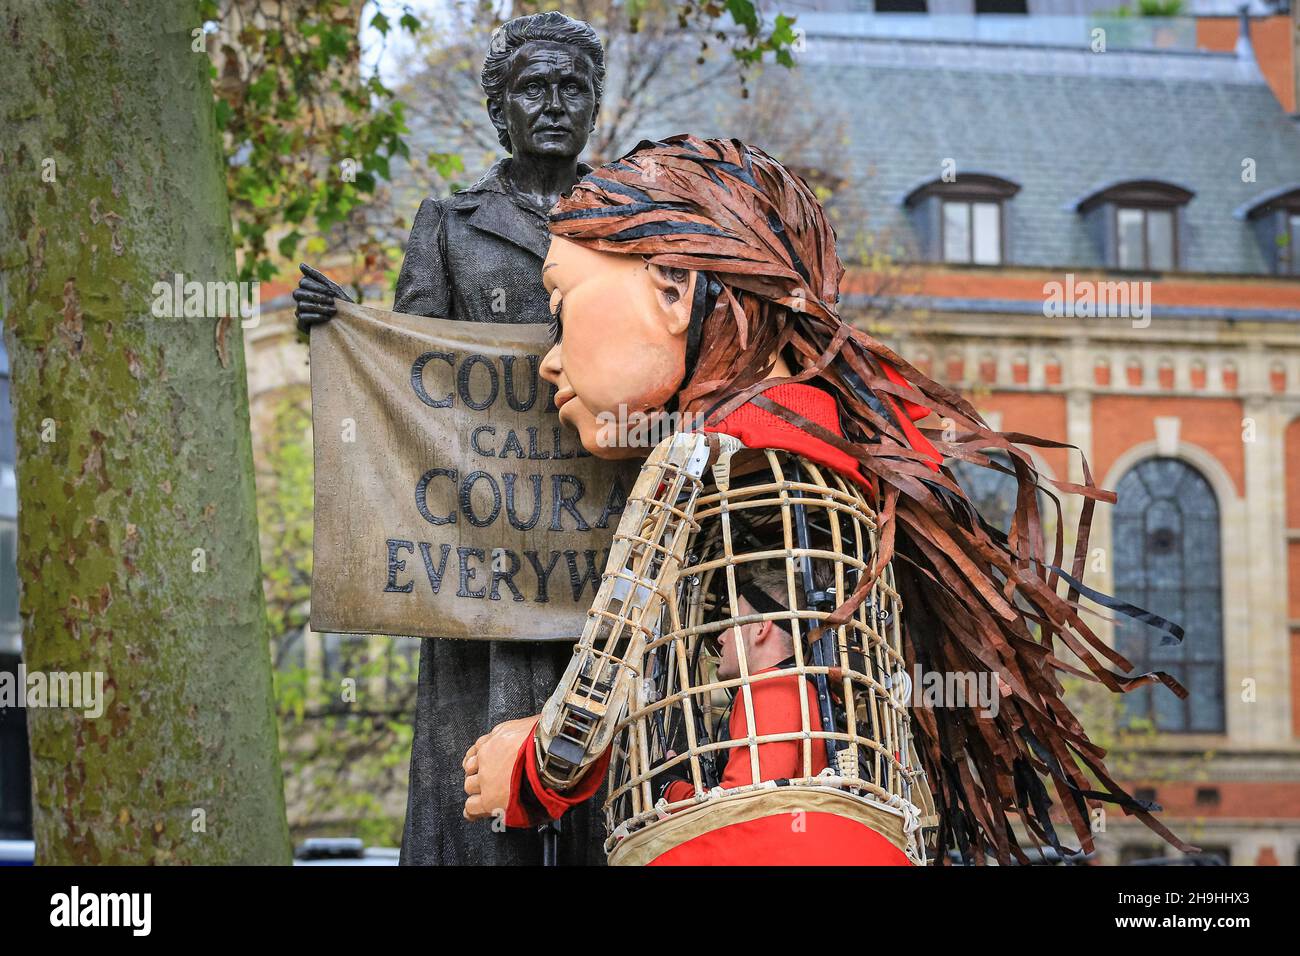 Westminster, Londres, Royaume-Uni.7 décembre 2021.Little Amal embrasse la statue de Millicent Fawcettt sur la place du Parlement.Little Amal, la marionnette géante qui représente une petite fille réfugiée, est de retour aujourd'hui dans le centre de Londres et hors du Parlement pour soutenir une protestation contre le projet de loi sur la nationalité et les frontières, qui pourrait potentiellement créer des obstacles aux réfugiés et autres demandeurs d'asile dans le système d'asile du Royaume-Uni.La marionnette avait été sur un long voyage de migrants de la Syrie au Royaume-Uni avec de nombreuses apparitions cet été et cet automne.Credit: Imagetraceur/Alamy Live News Banque D'Images